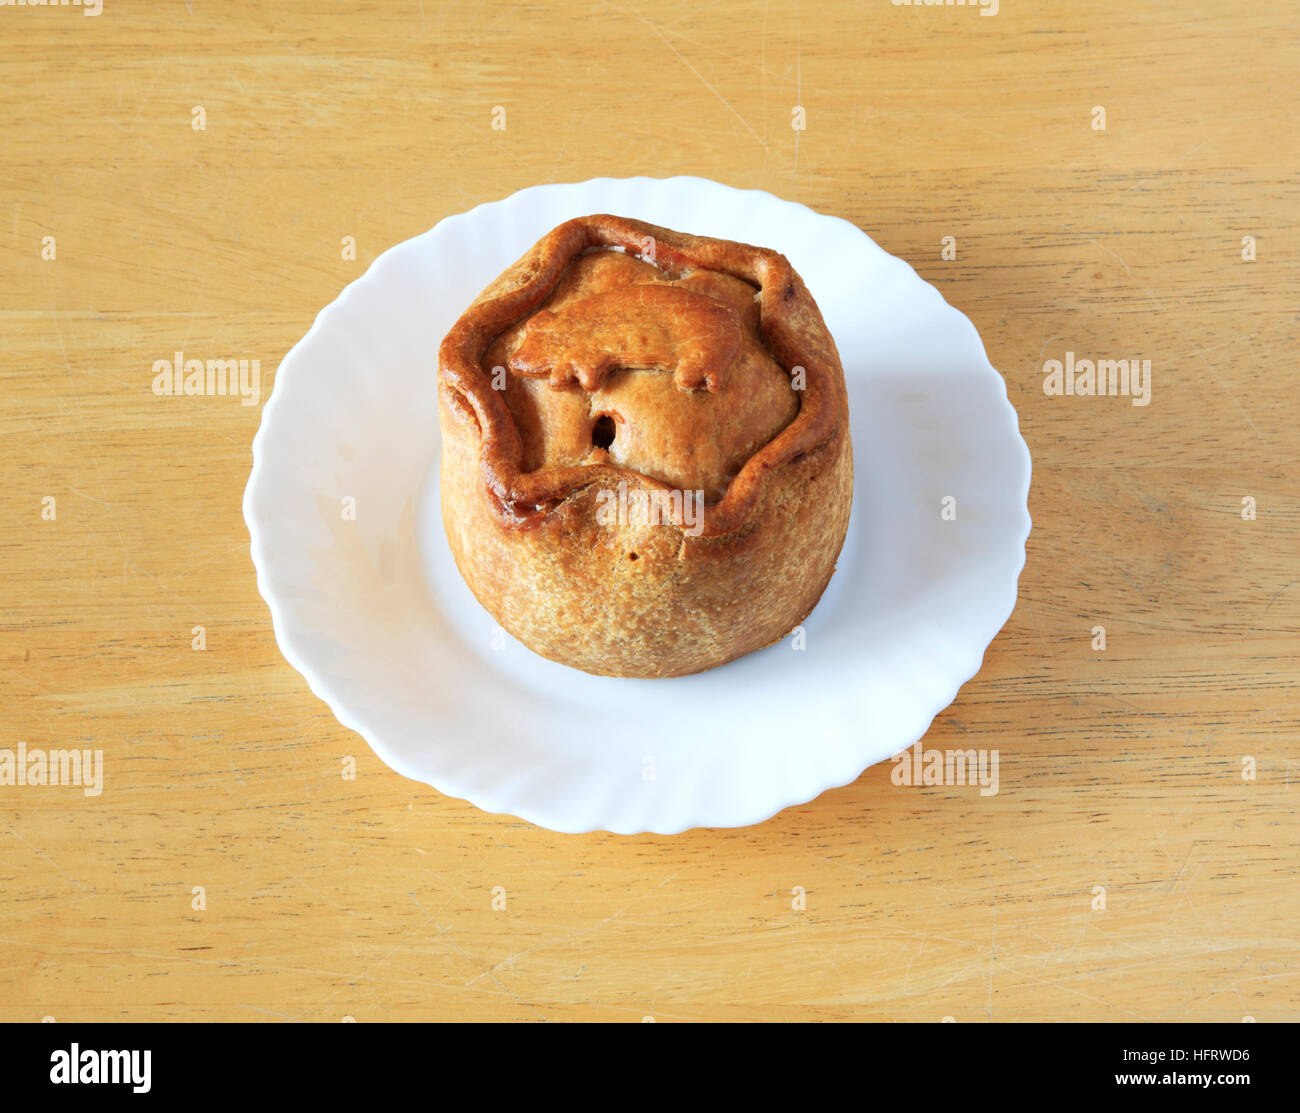 Ein Melton Mowbray Pork Pie auf einem weißen Teller auf einem Holztisch. Stockfoto